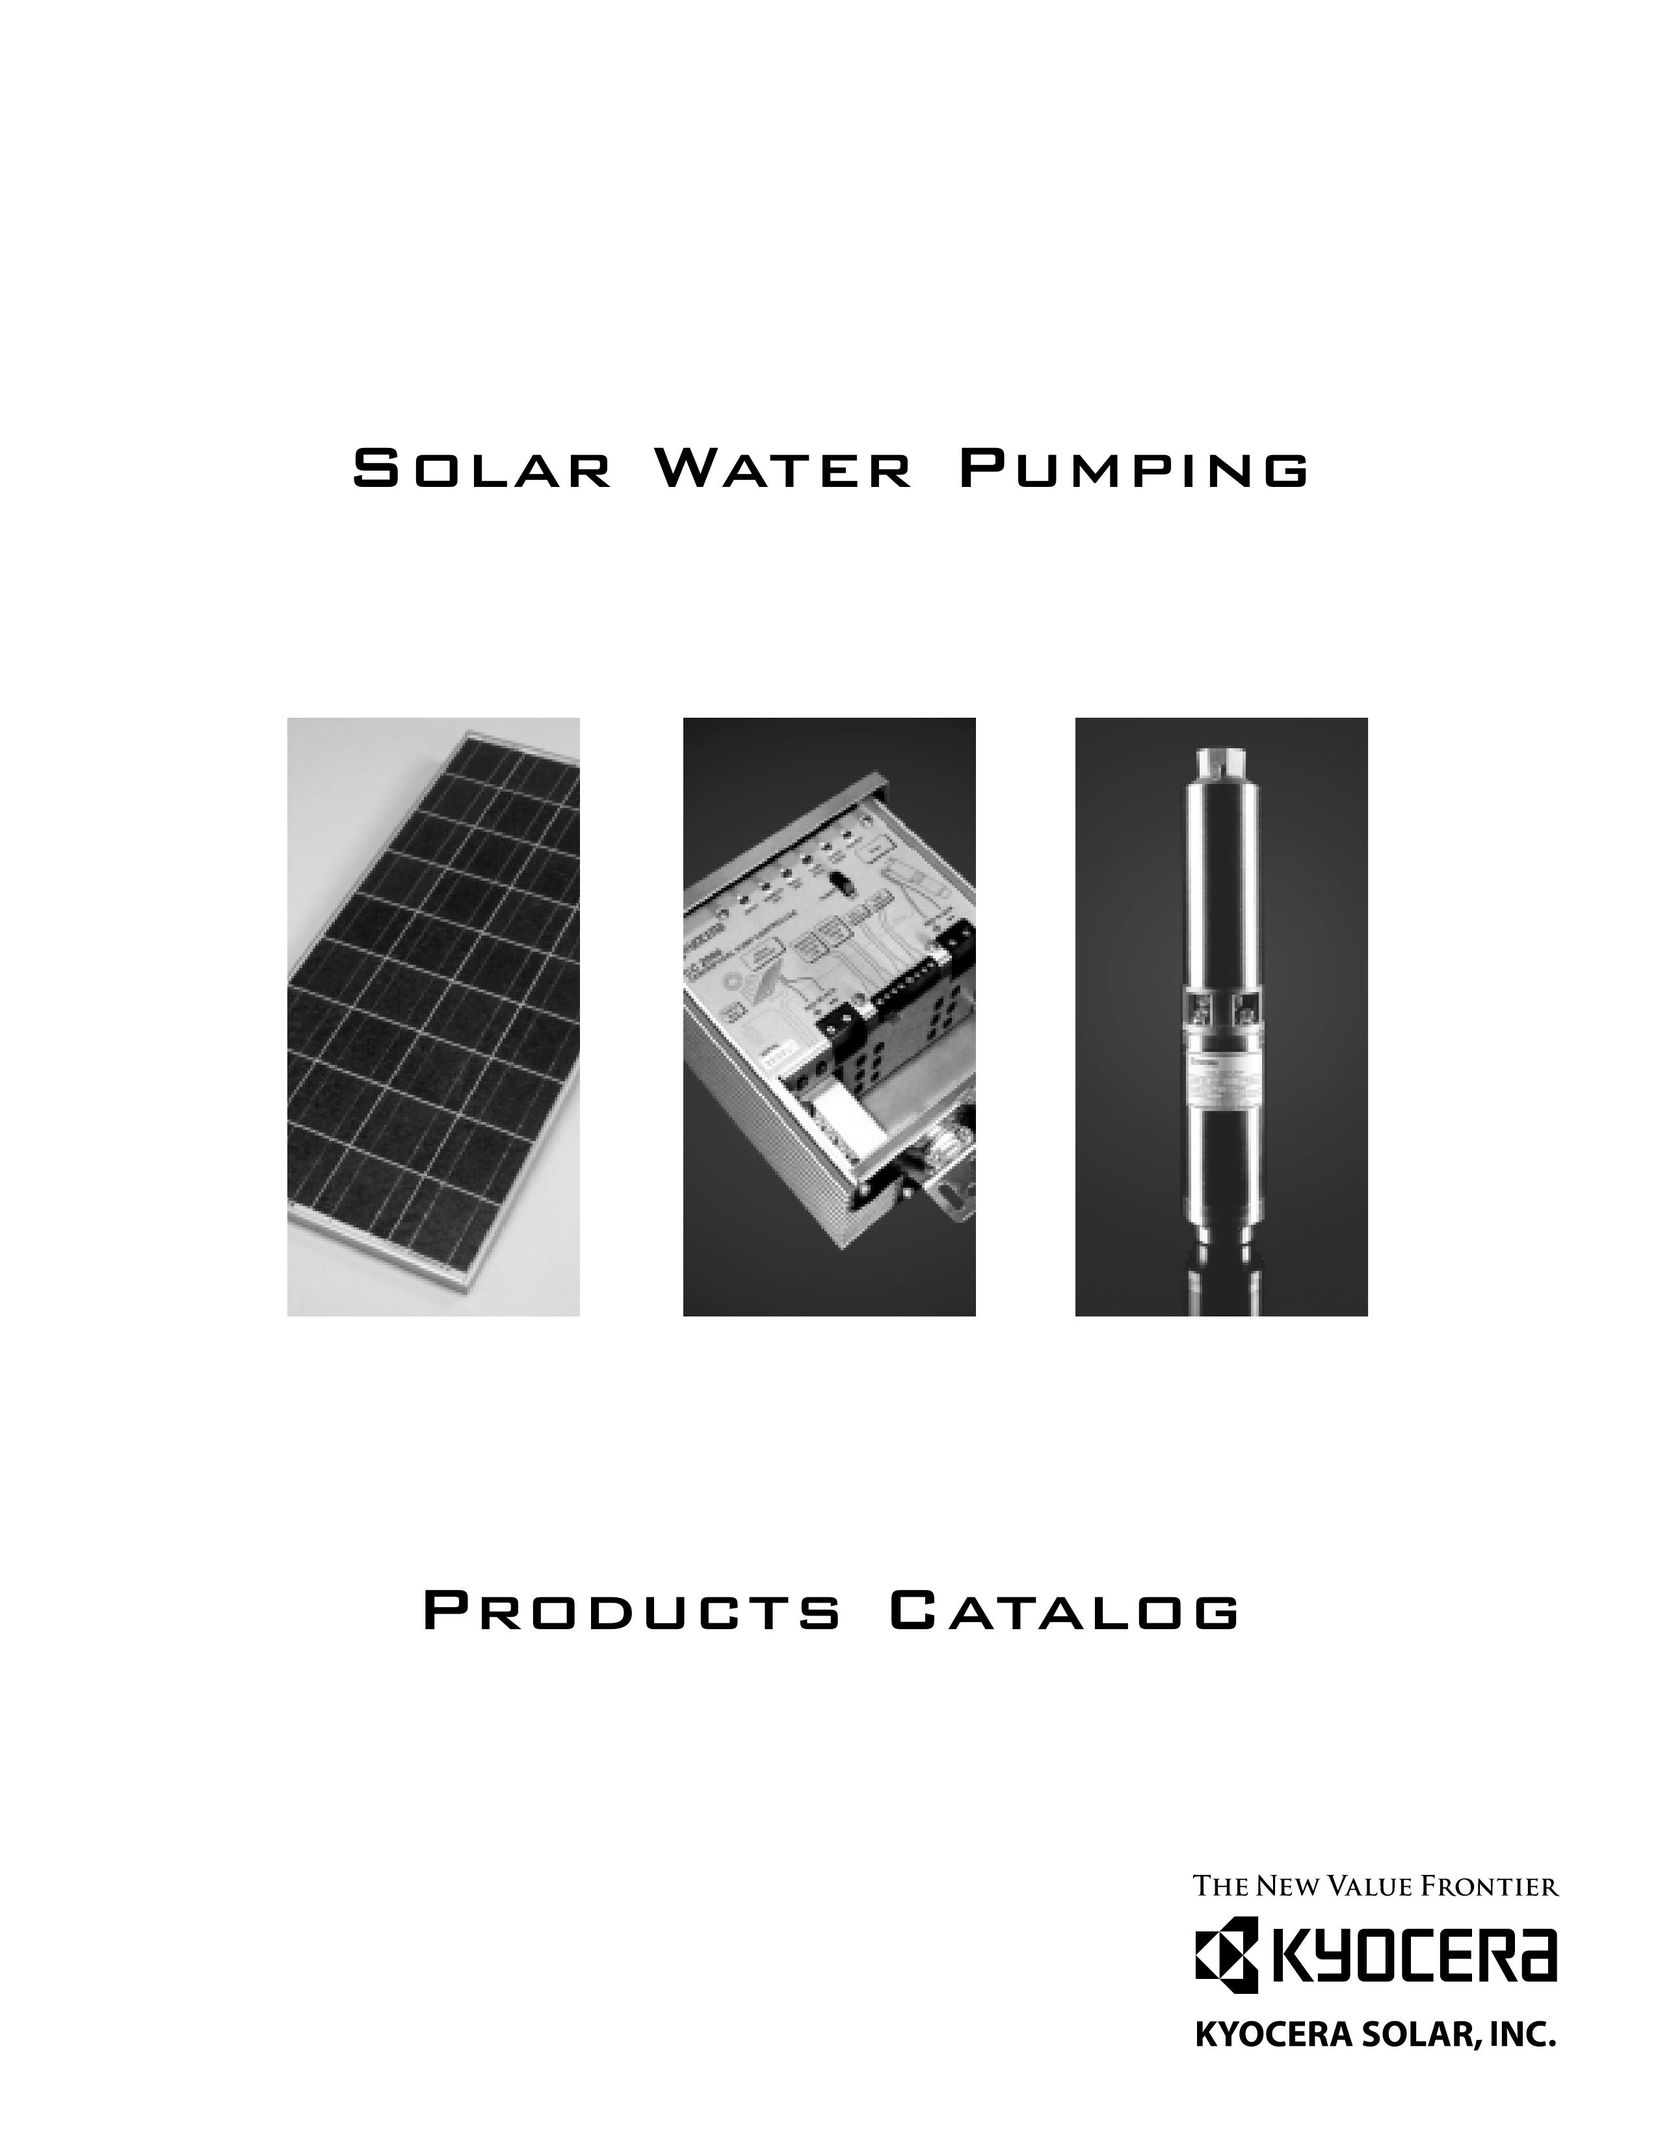 Kyocera SD 3-70 Water Pump User Manual